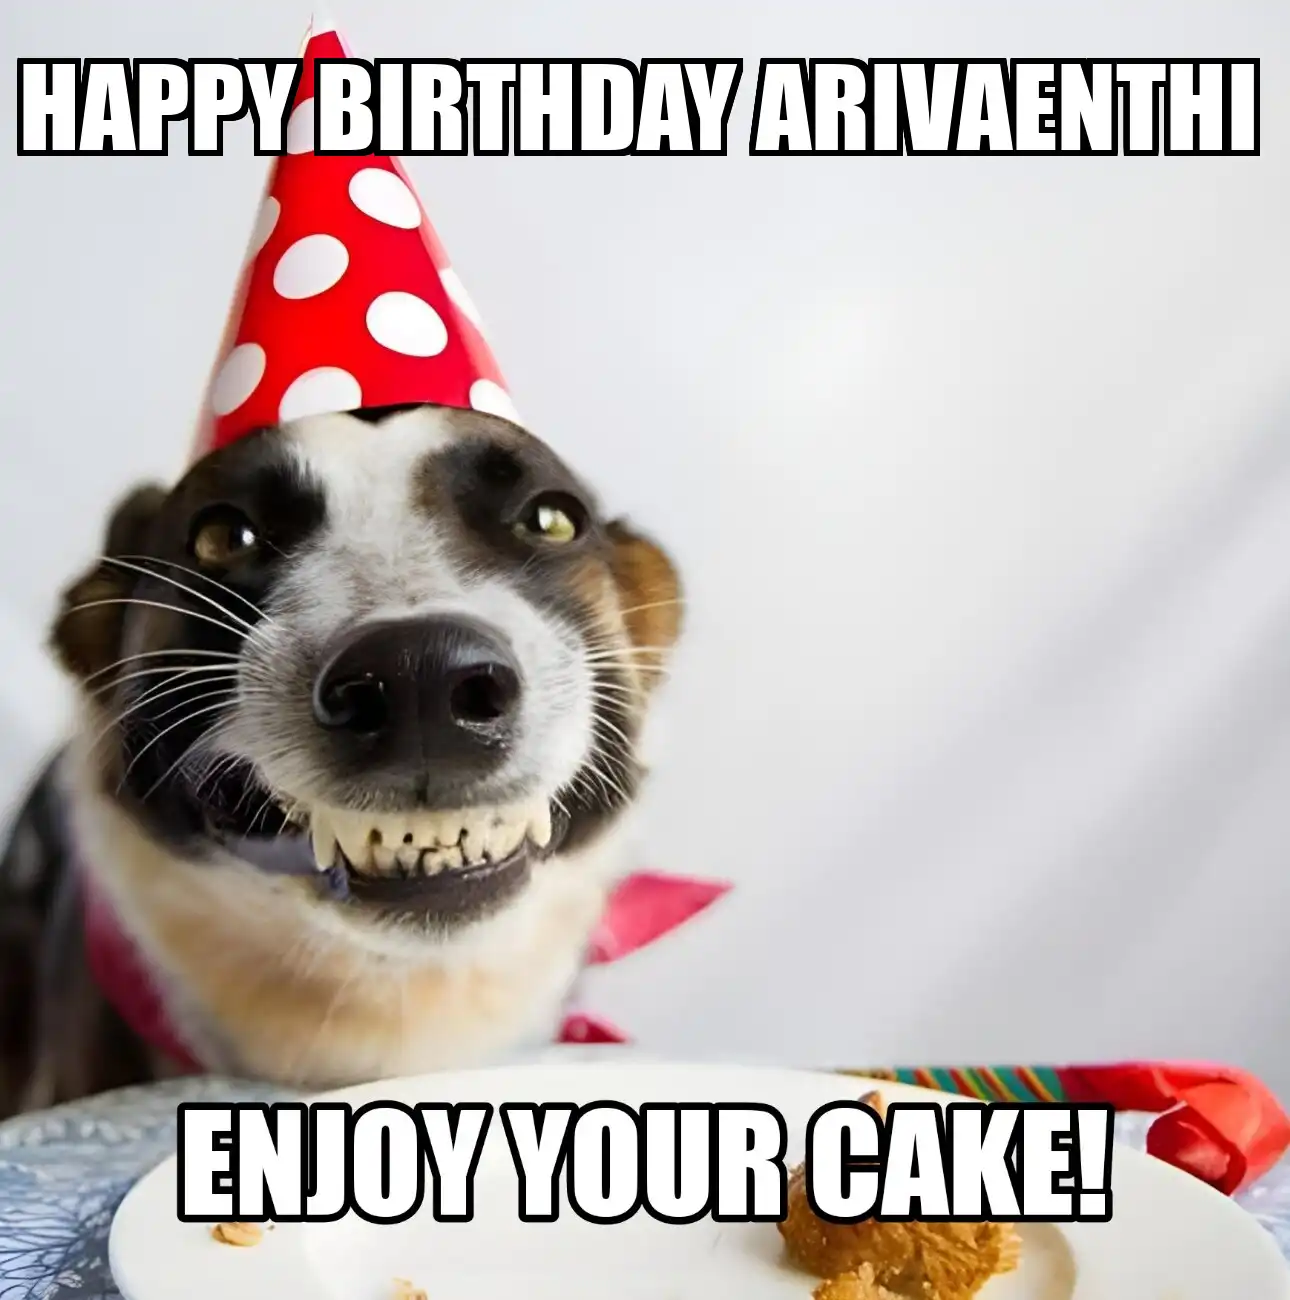 Happy Birthday Arivaenthi Enjoy Your Cake Dog Meme